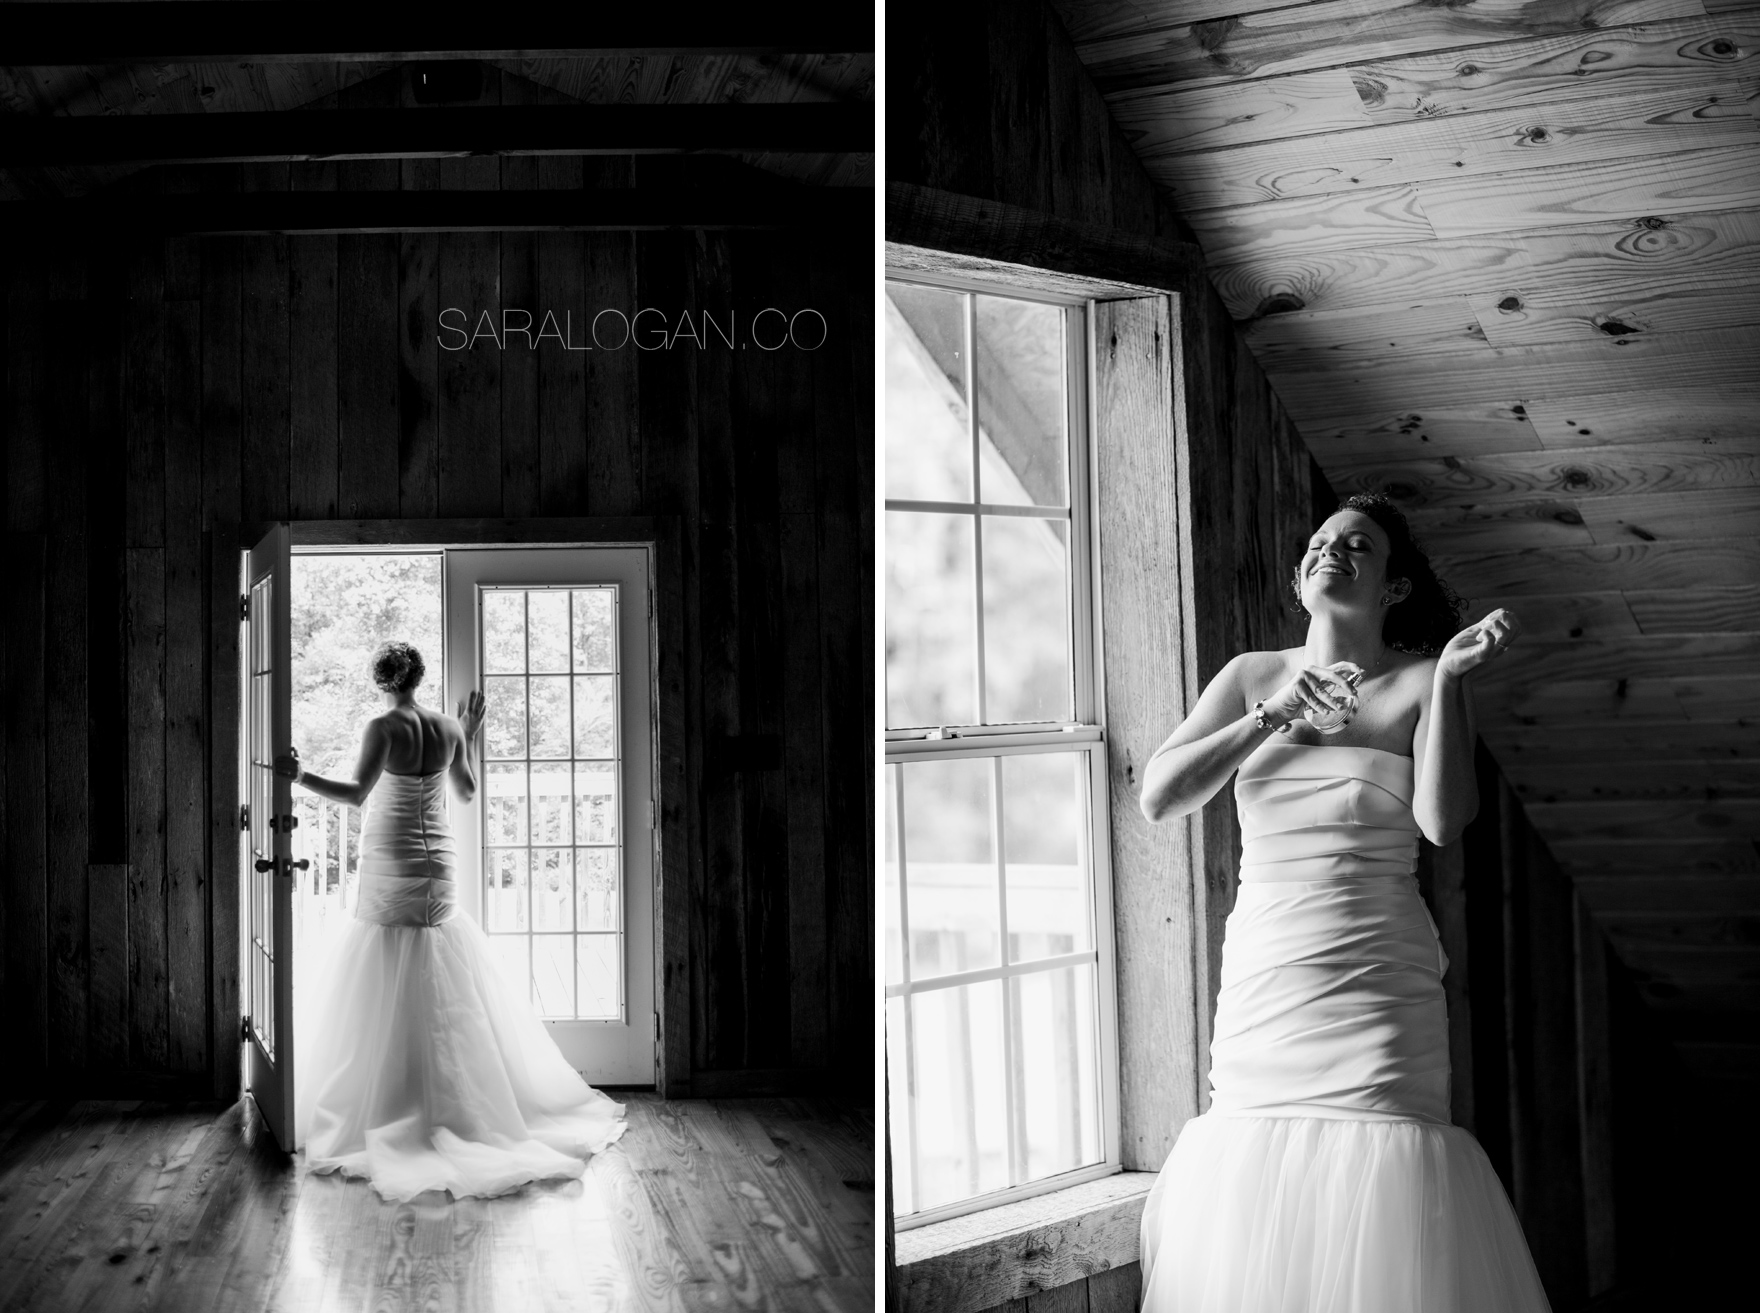 densmore farm wedding photos